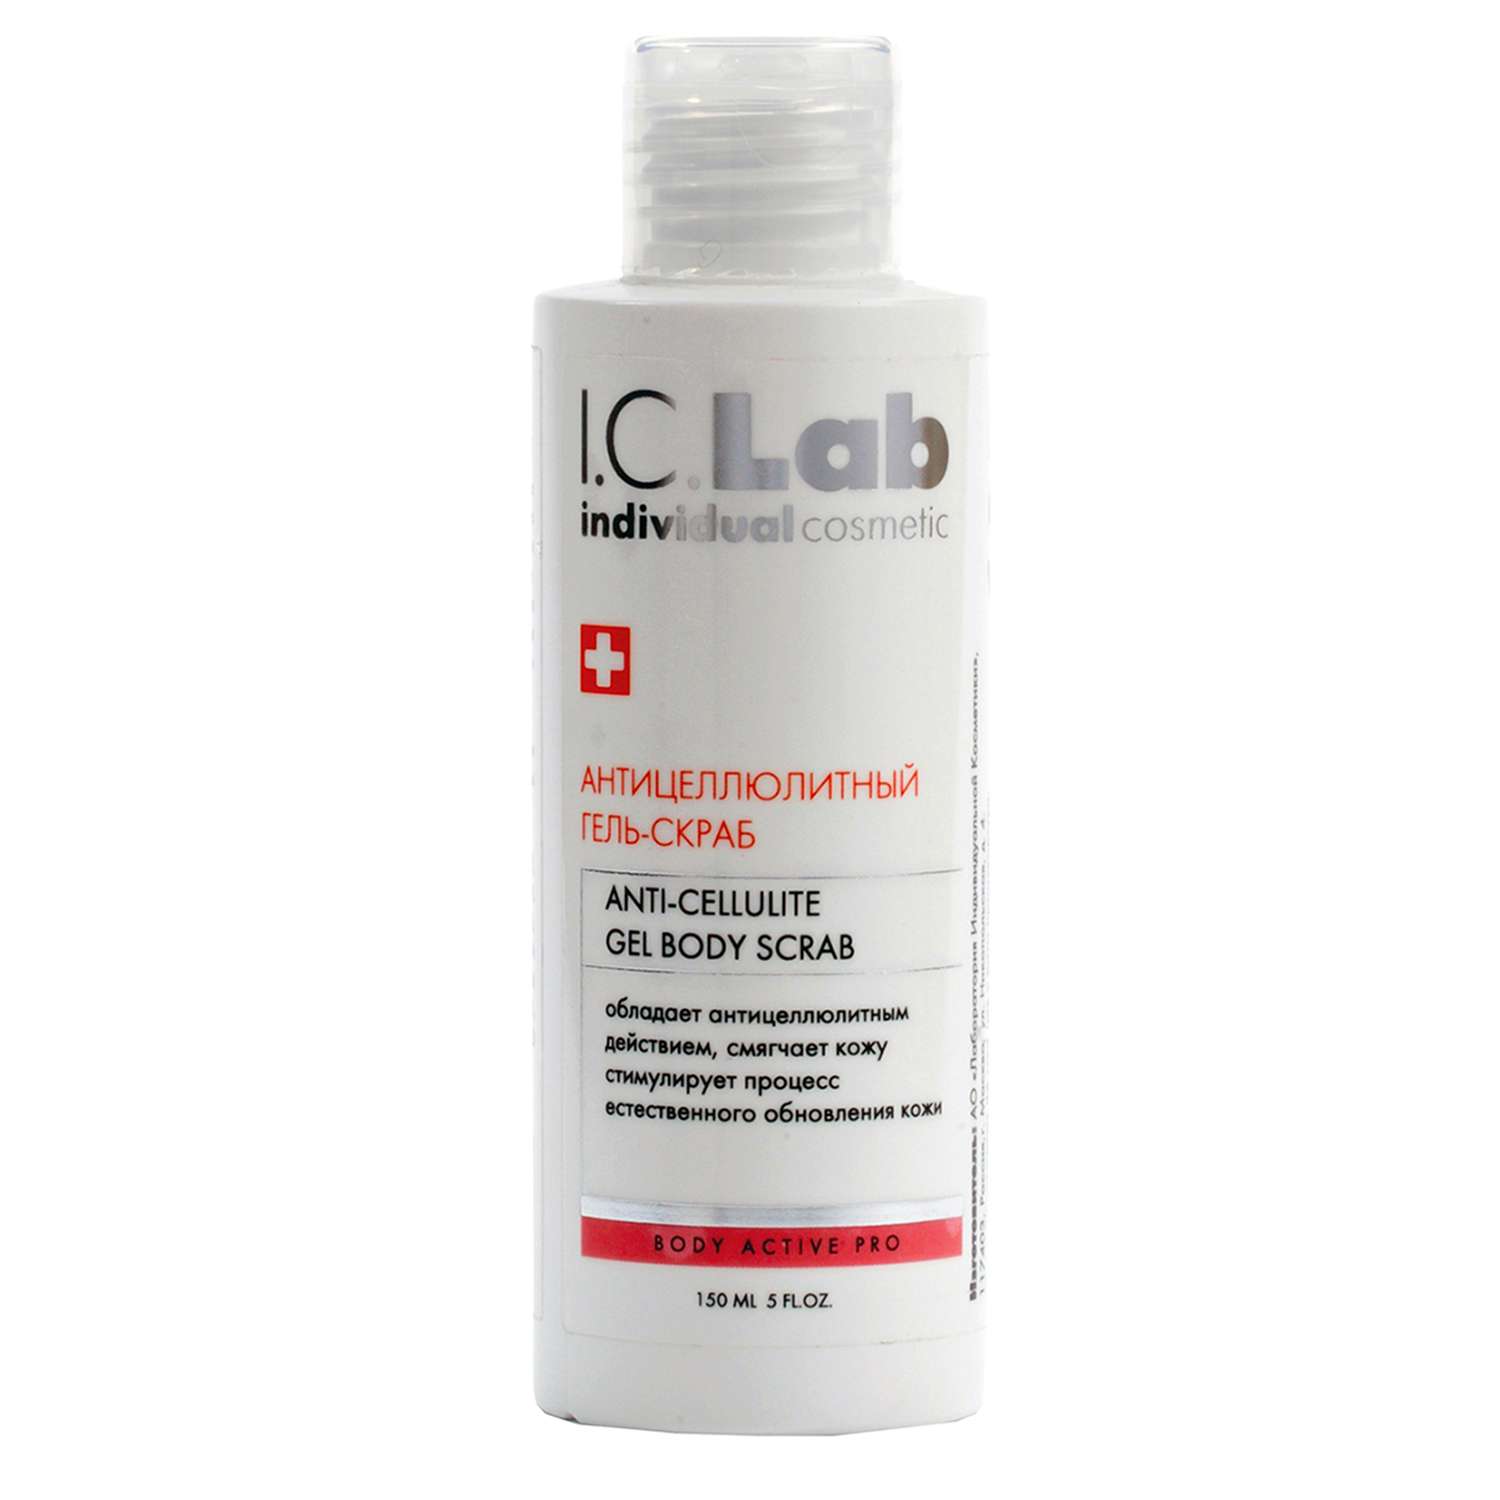 Гель-скраб I.C.Lab Individual cosmetic для тела антицеллюлитный 150 мл - фото 1